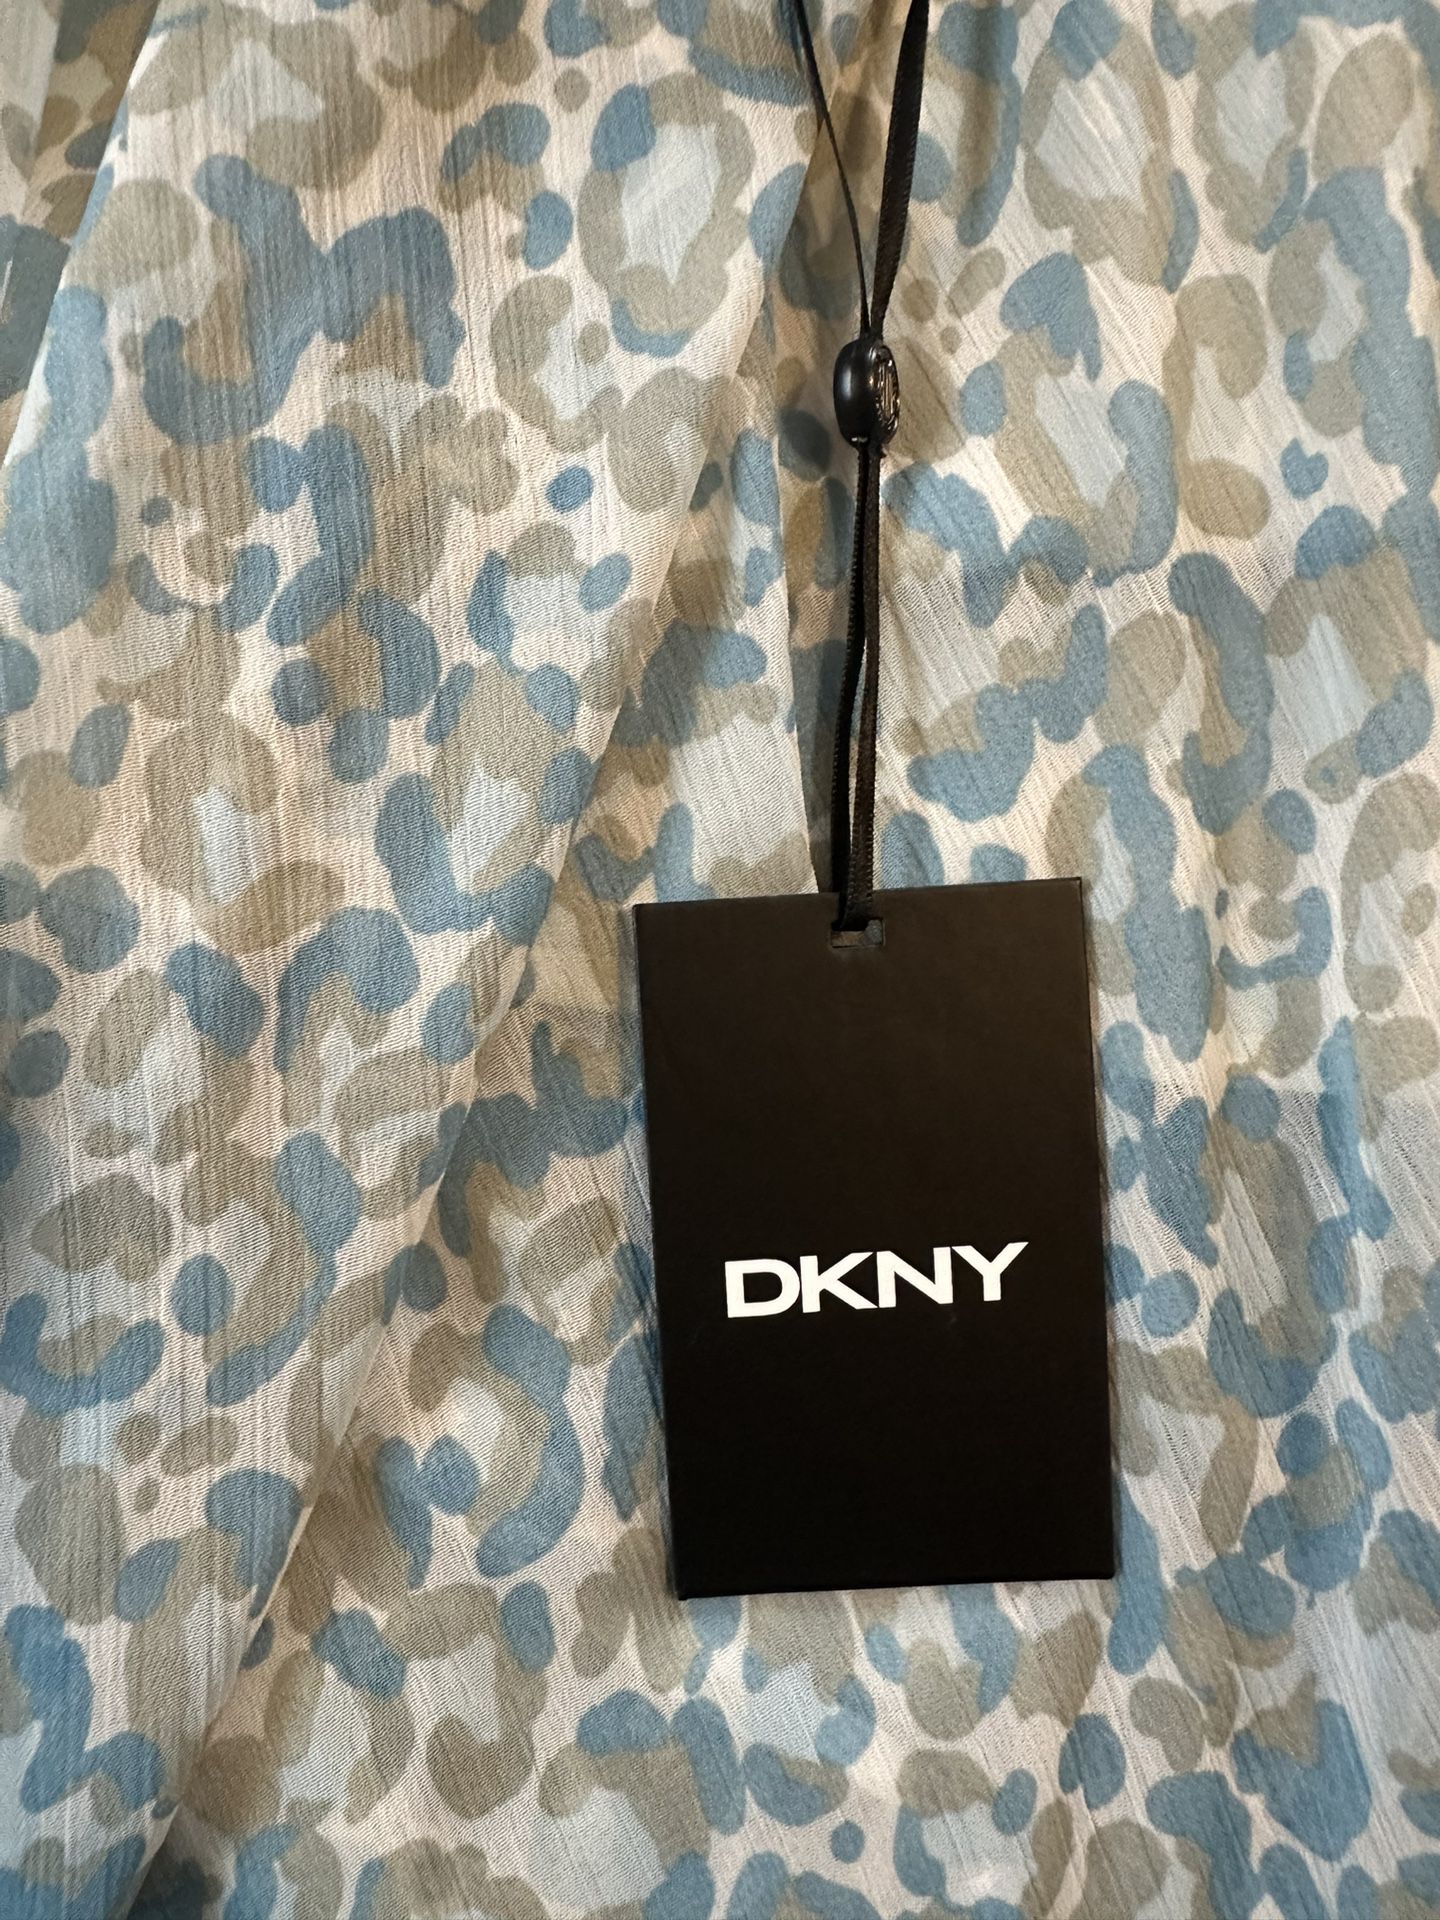 DKNY blue leopard print skirt NWT - Size Medium 